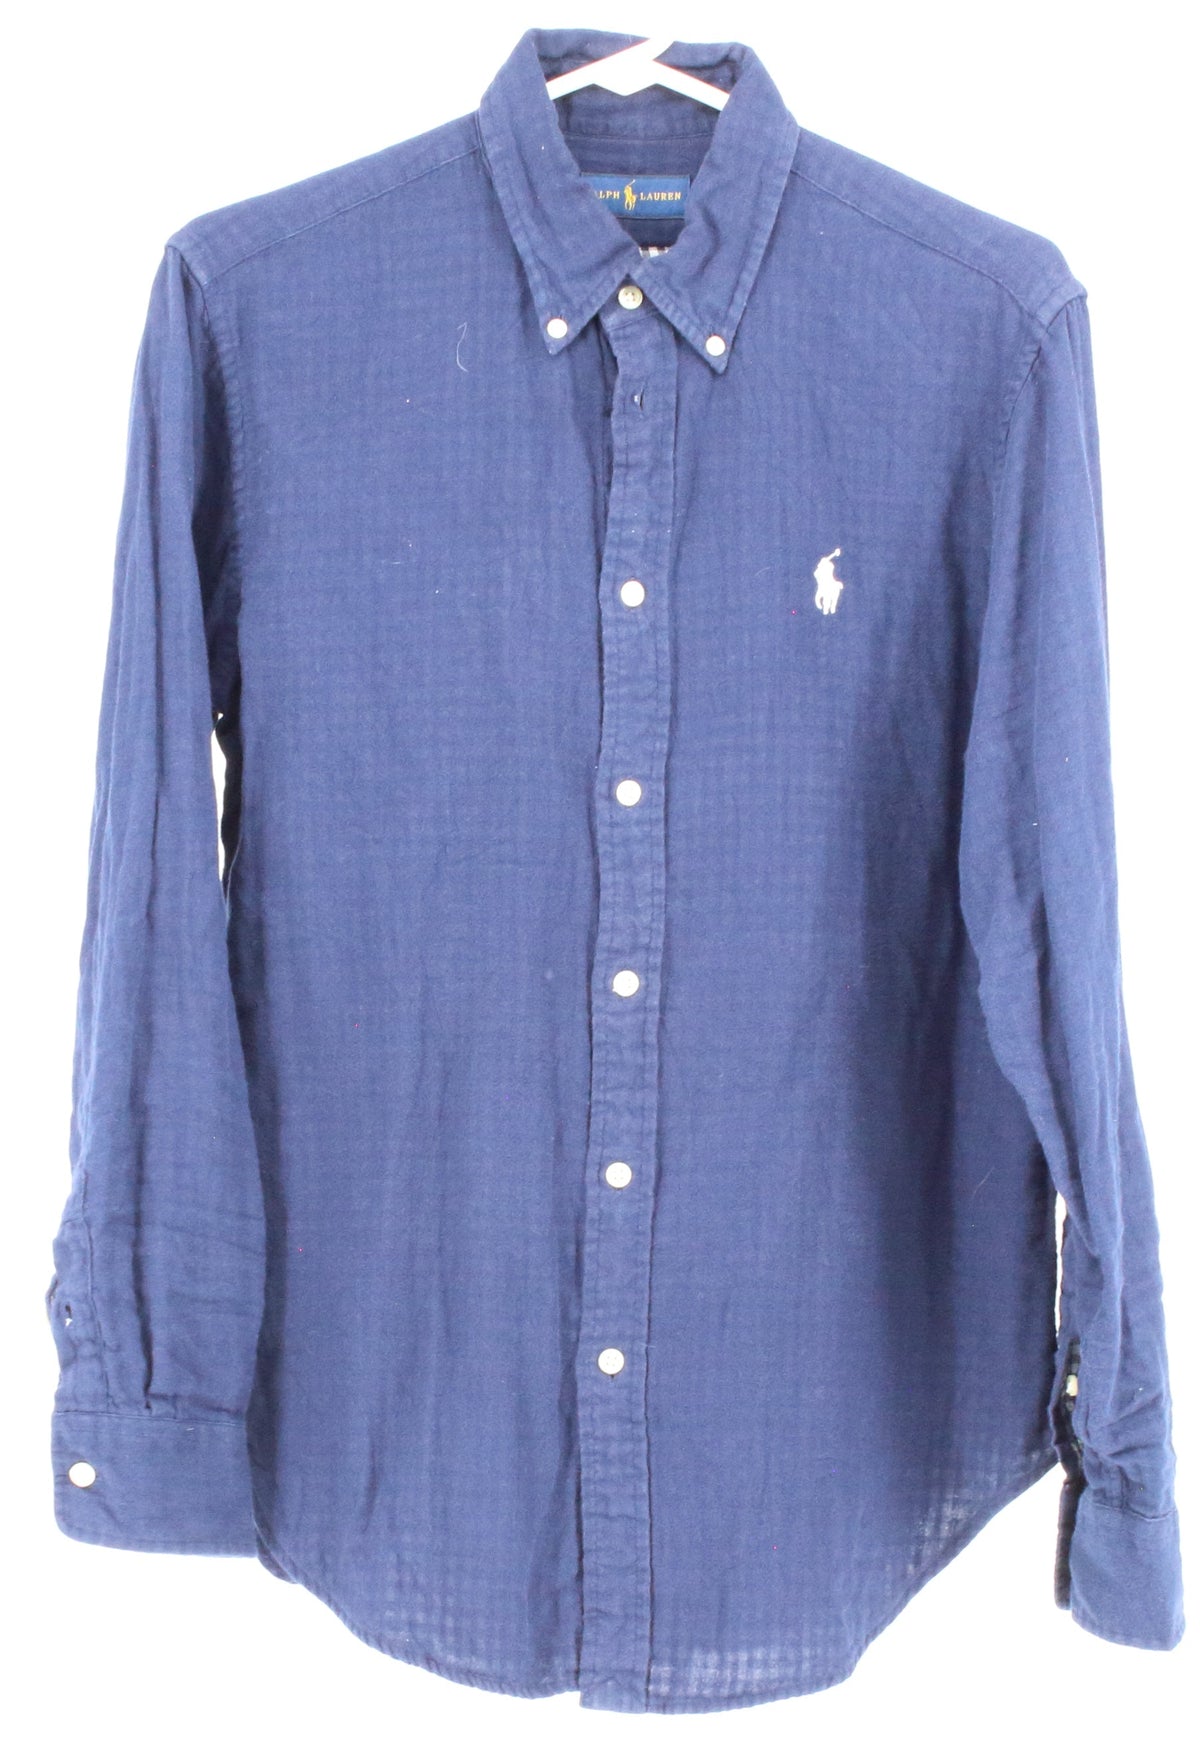 Ralph Lauren Navy Blue Check Print Lined Shirt